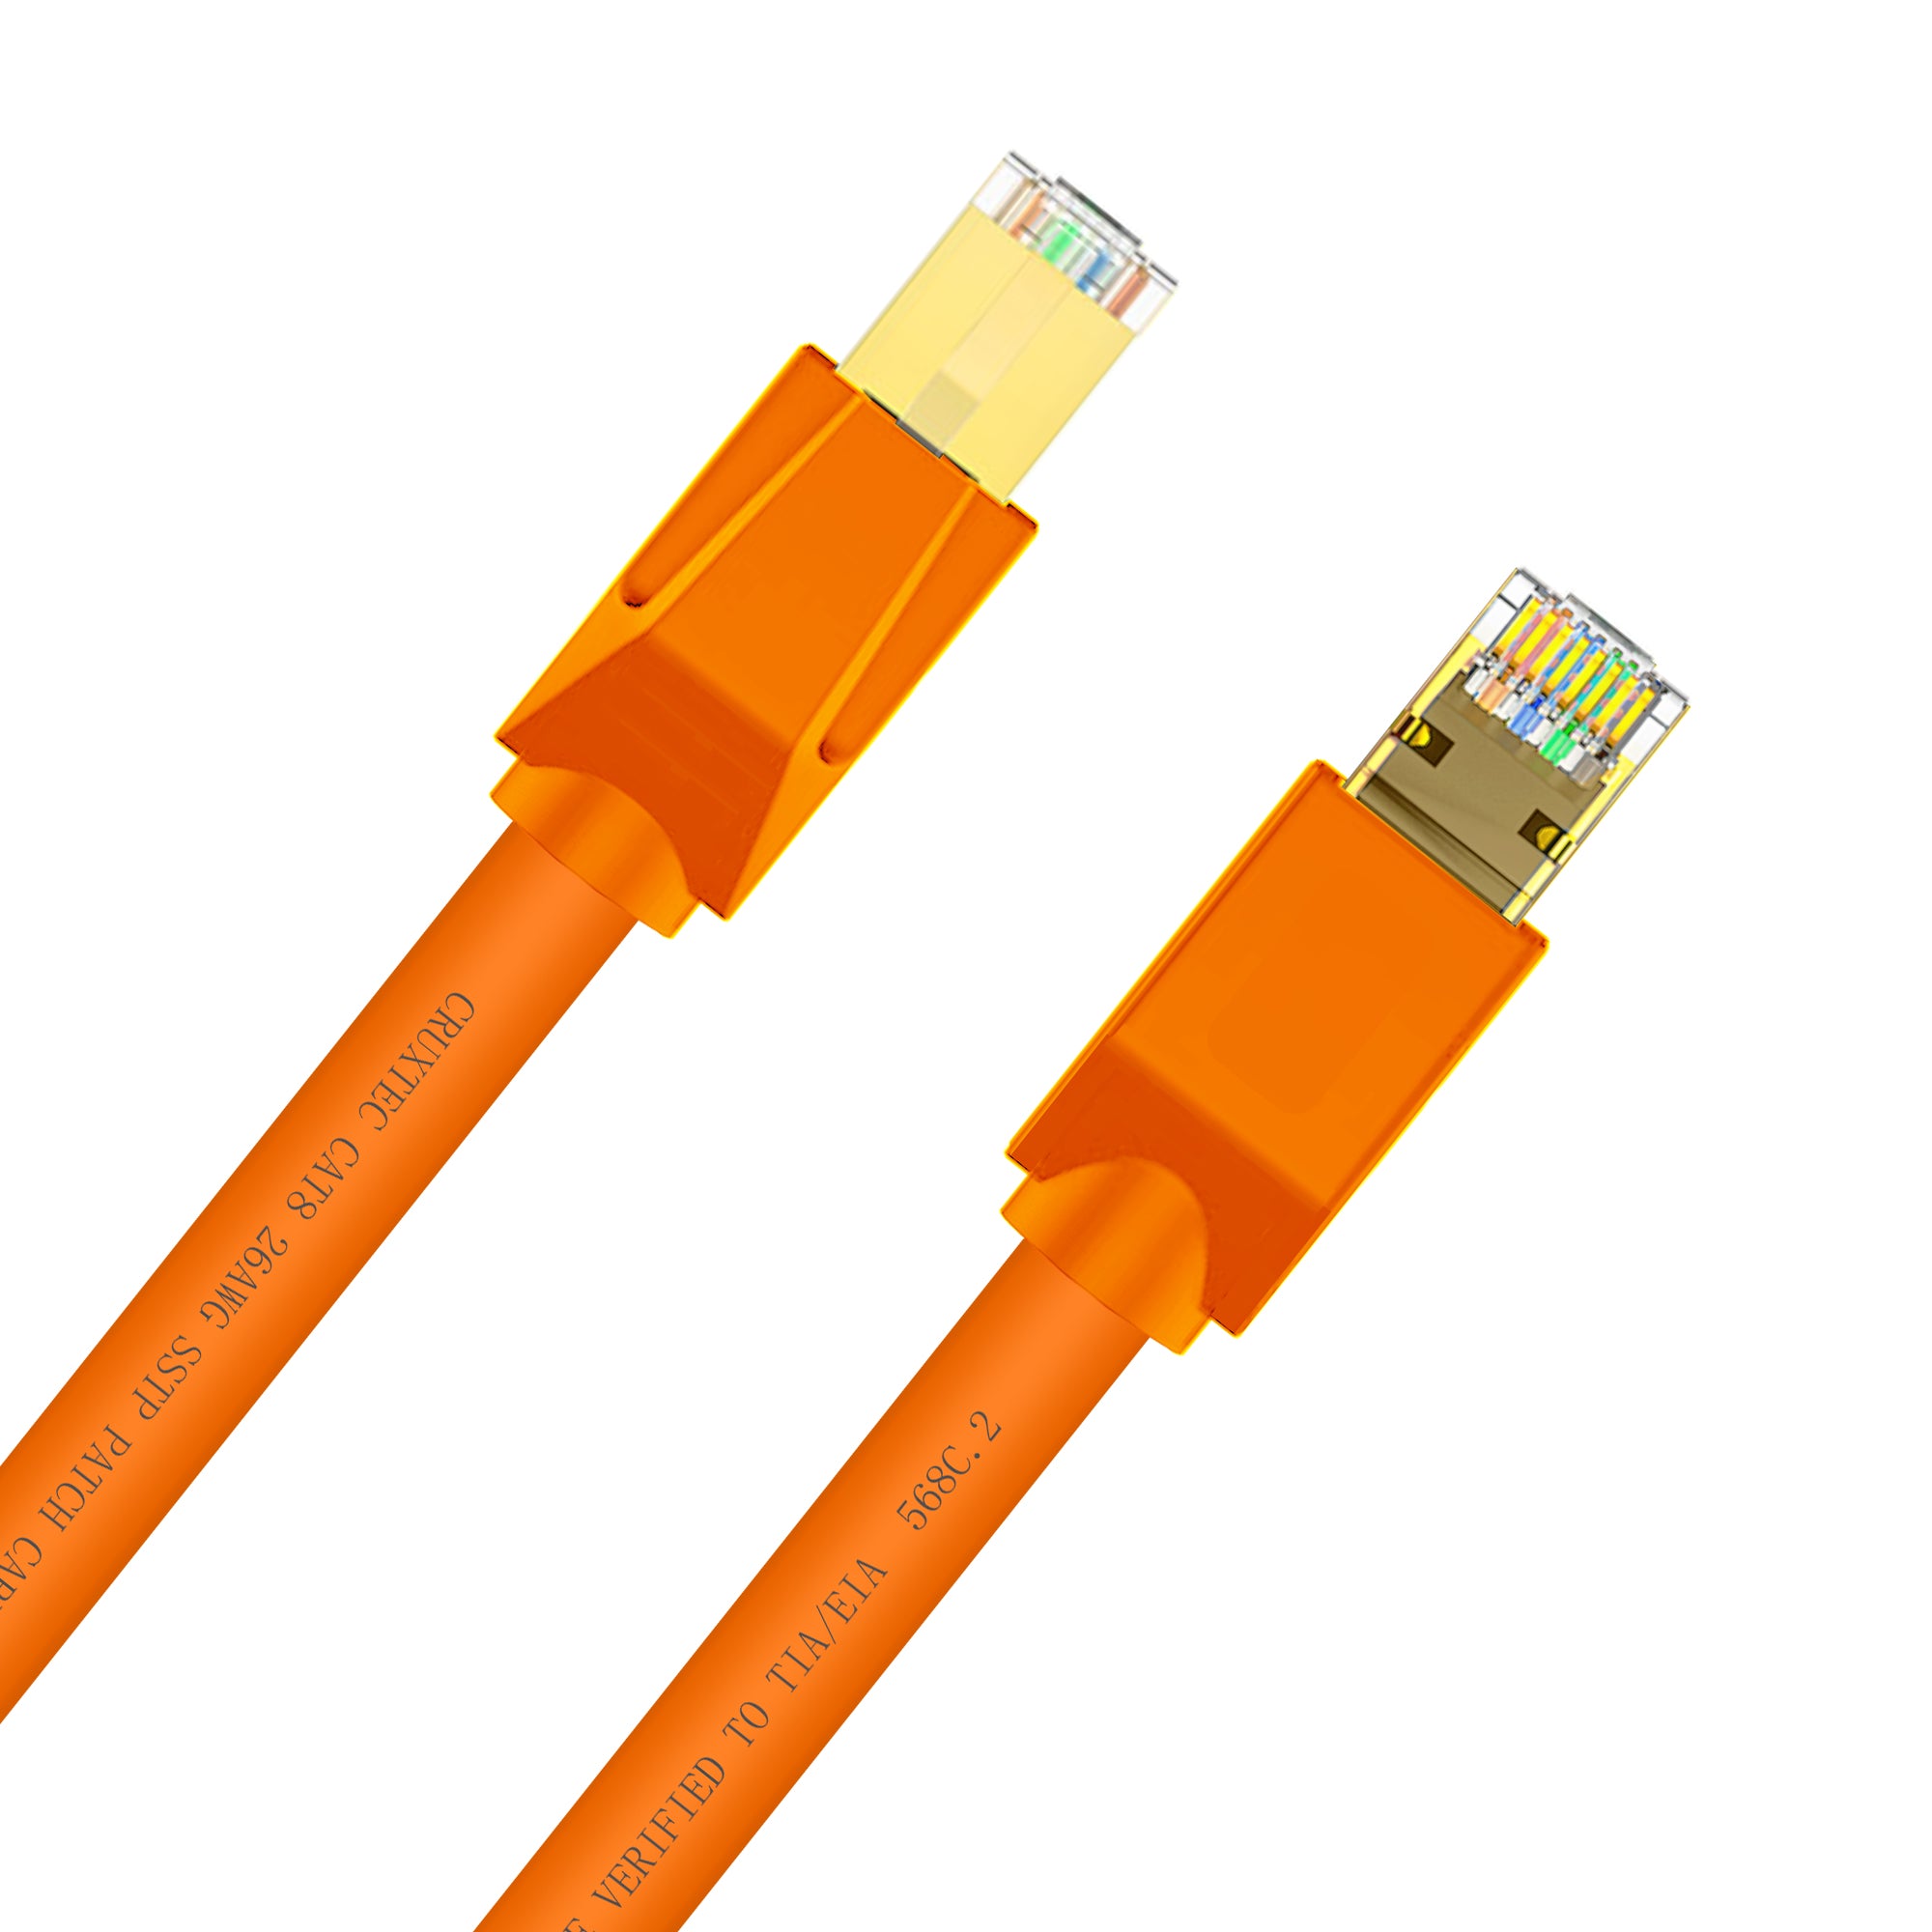  Cable Ethernet Cat 8 para red, color rojo, 3 pies, 40 Gbps,  2000 Mhz, cobre 26AWG S/FTP, cable de rendimiento blindado de alta  velocidad, conector RJ45 chapado en oro para juegos